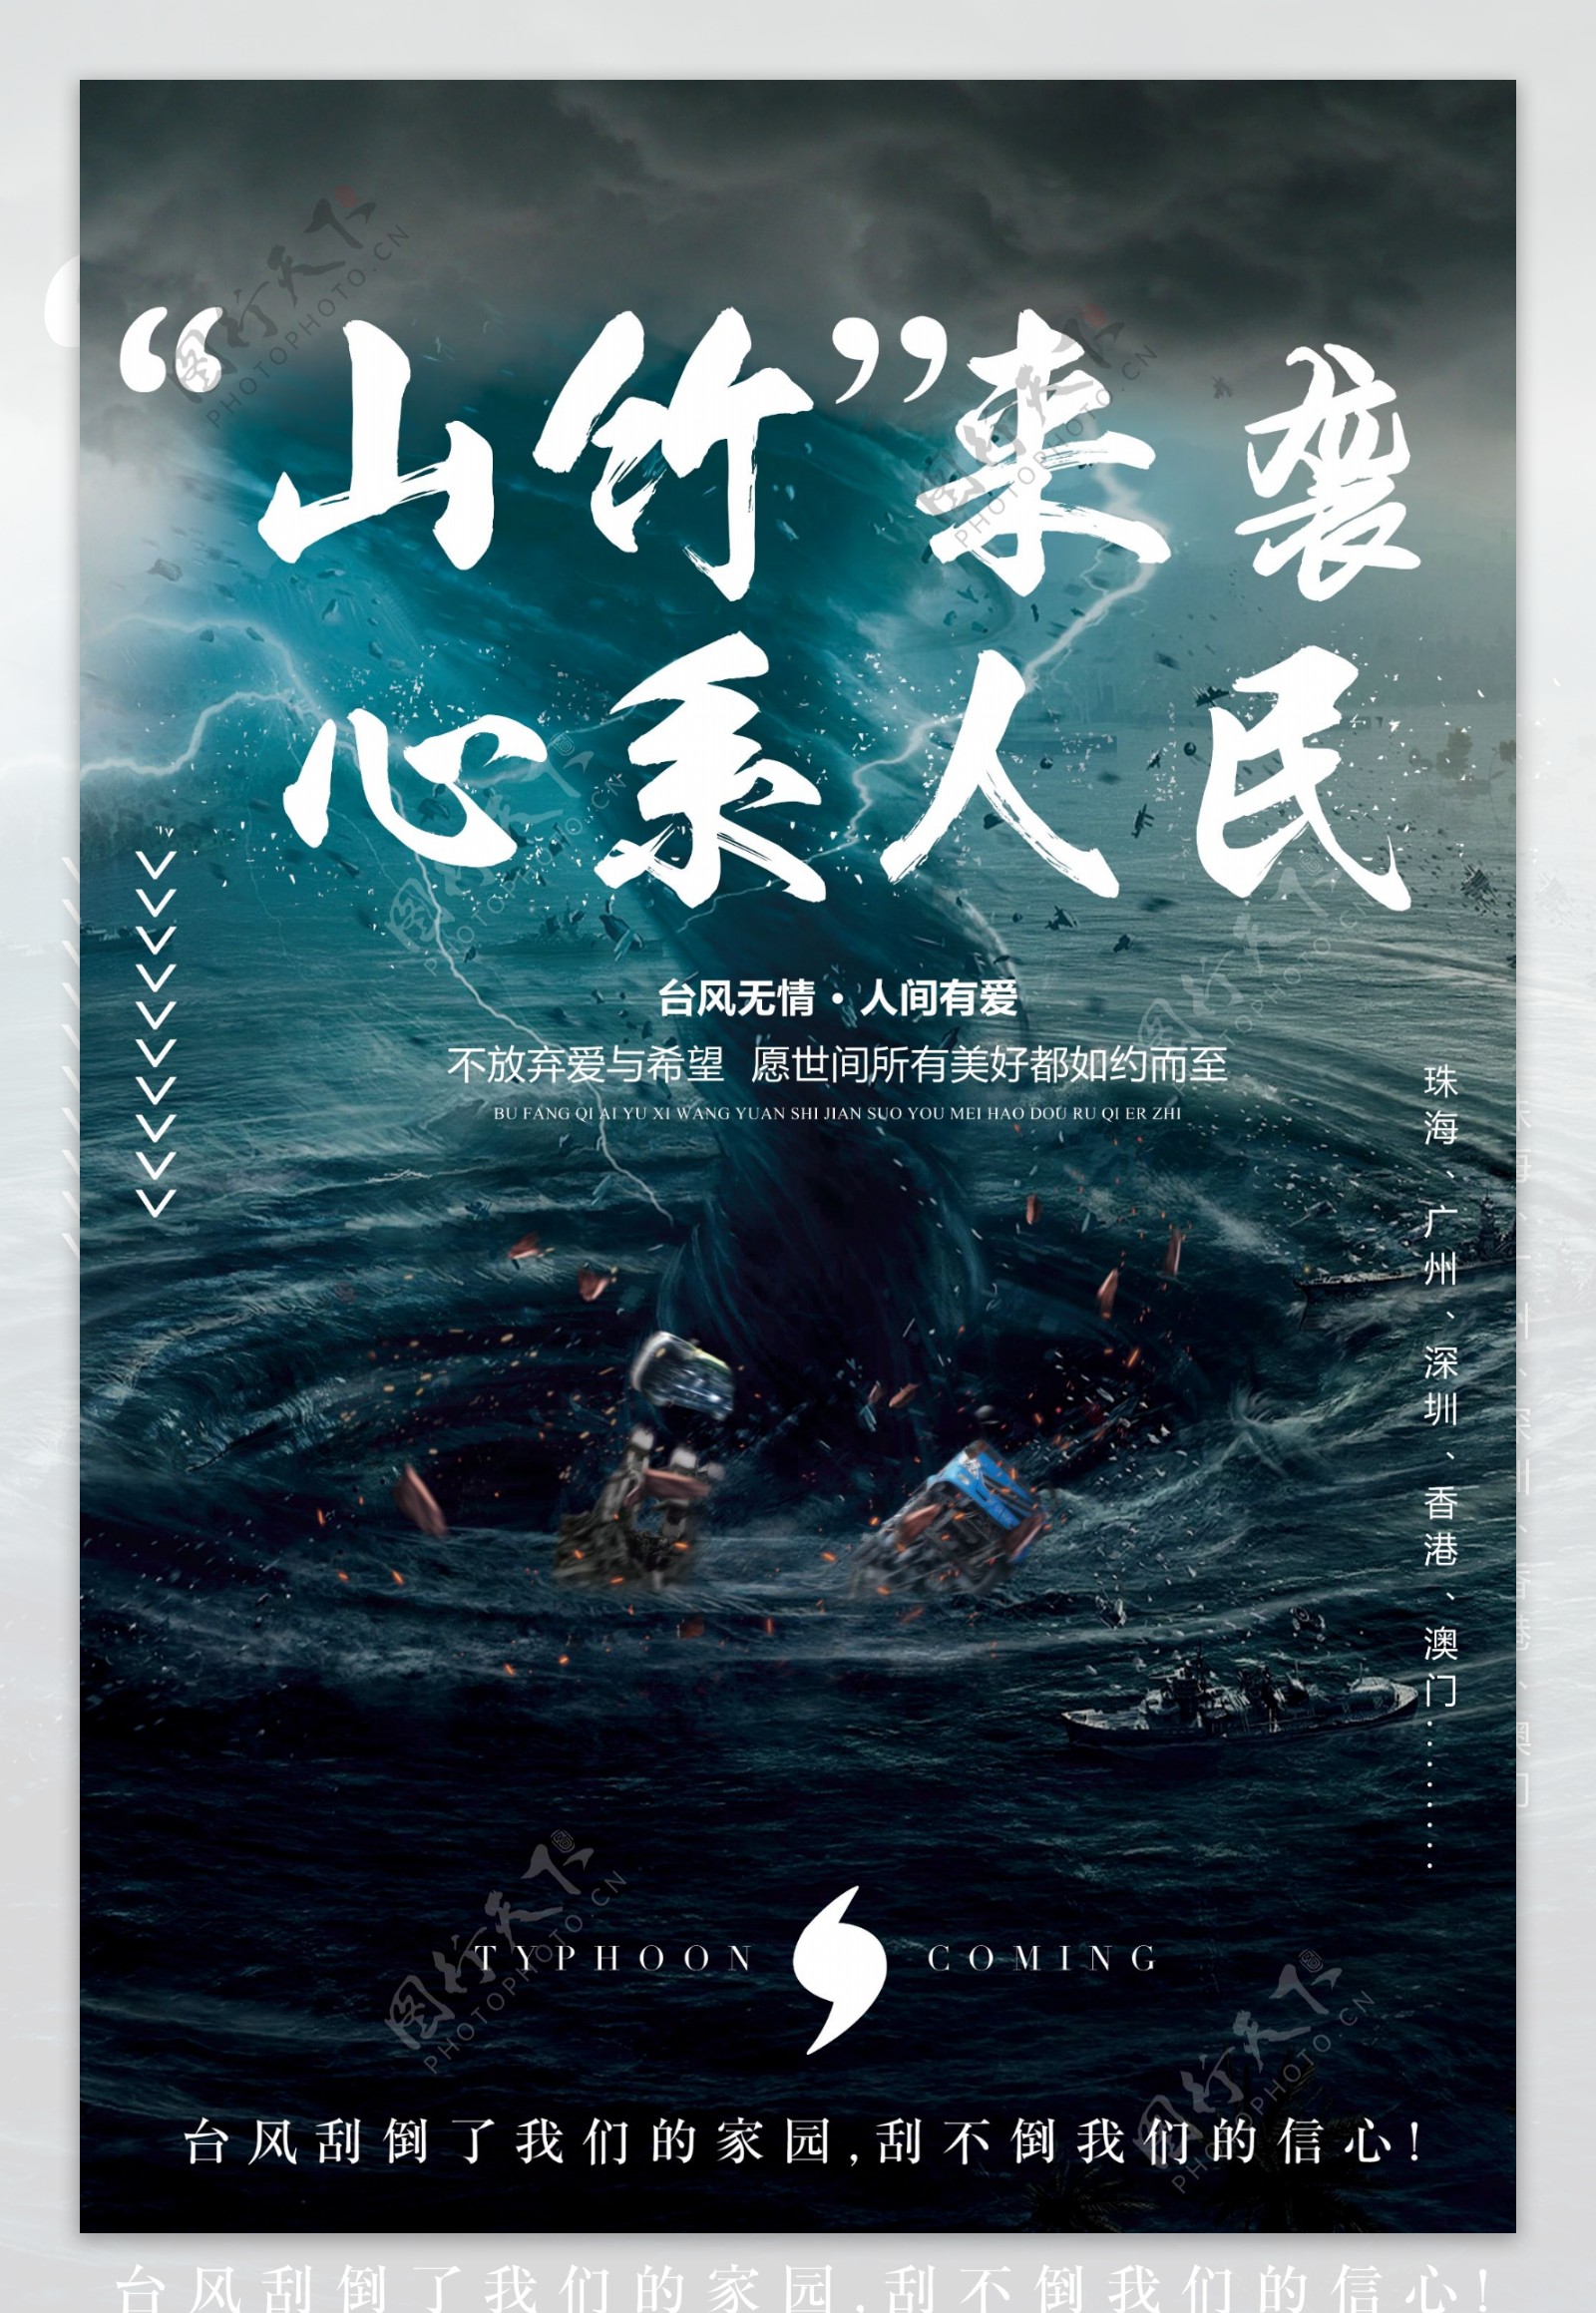 2018山竹台风鼓励海报设计经典案例模板